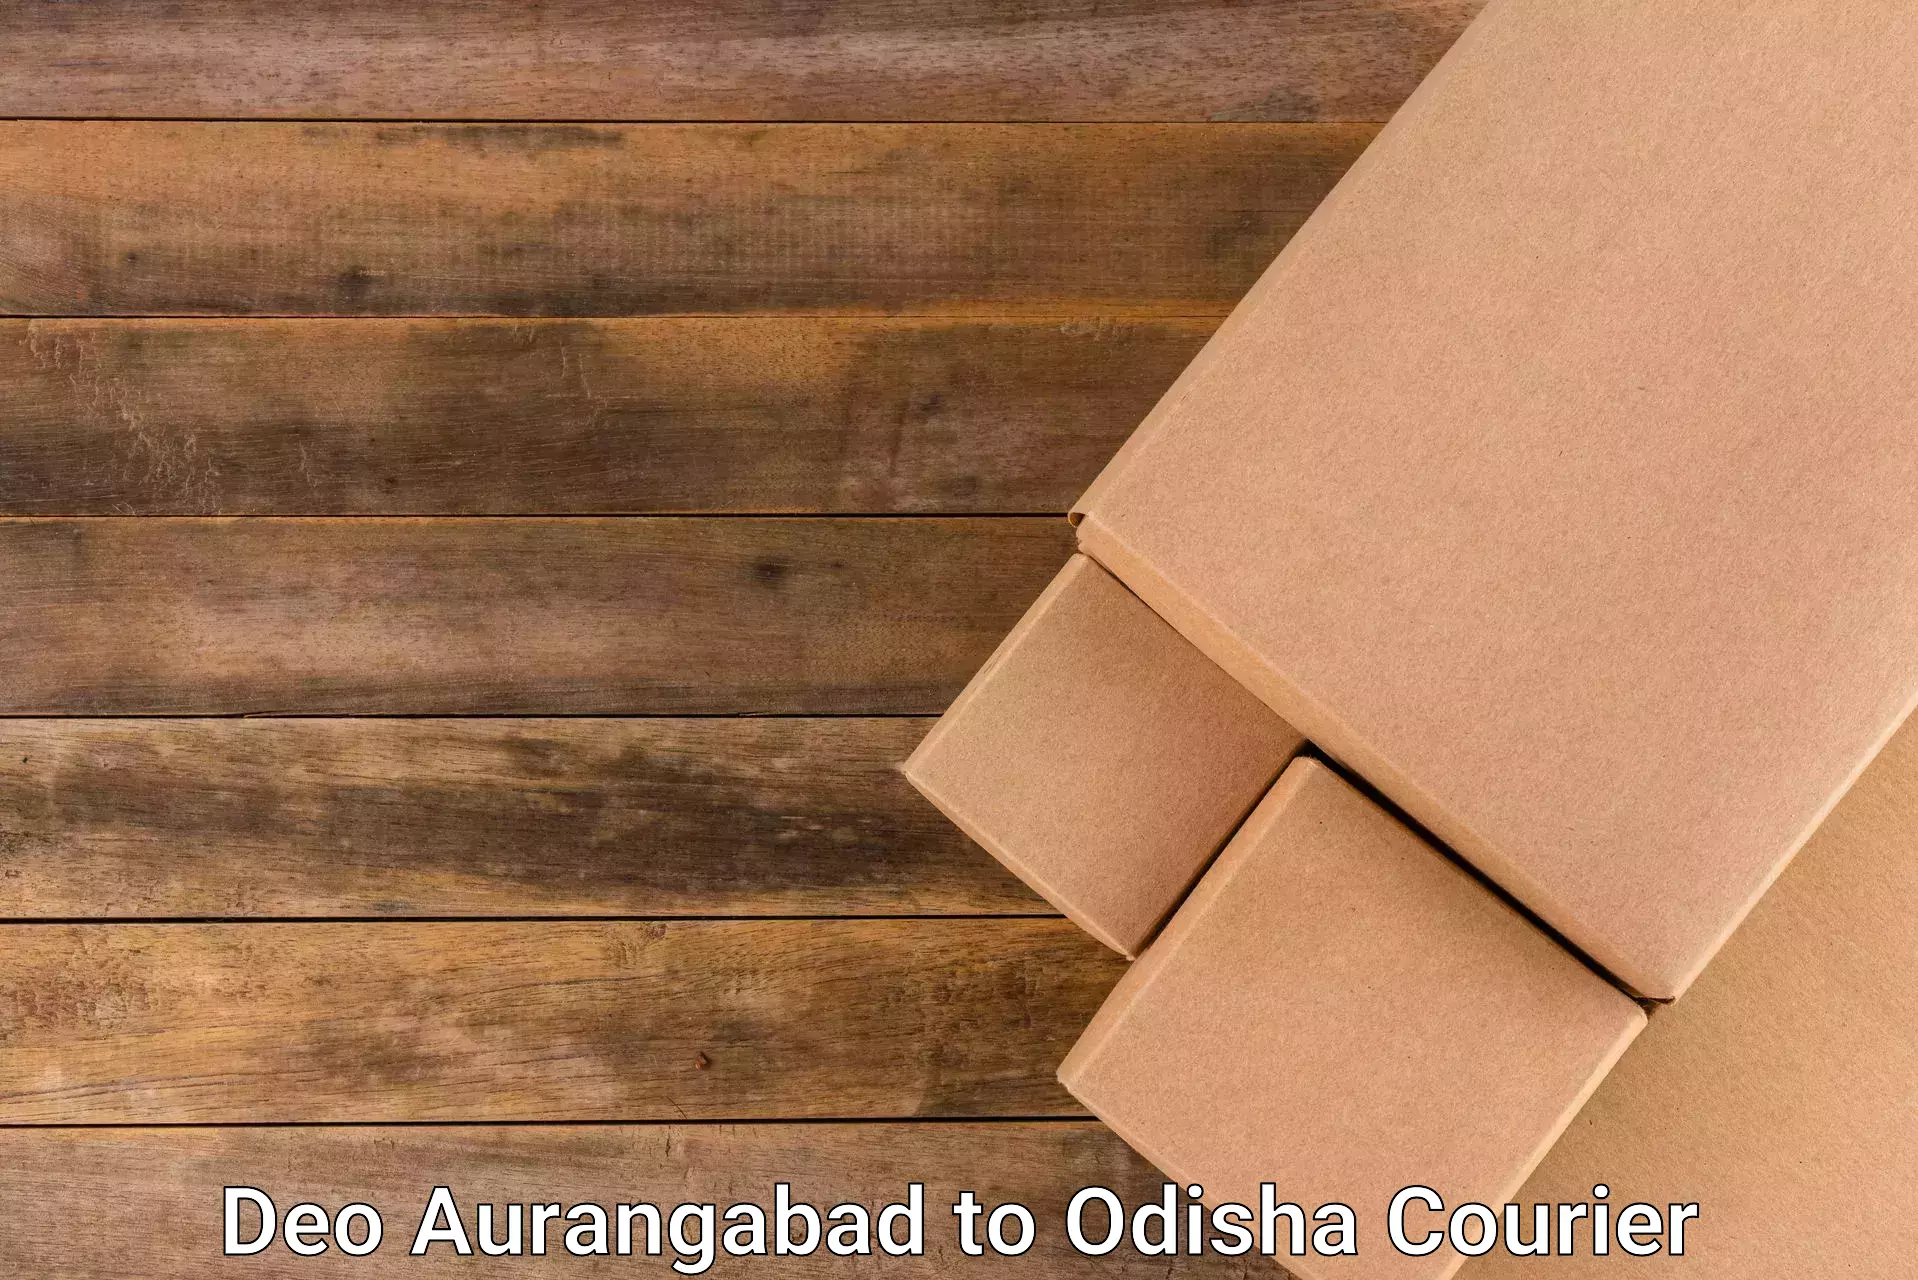 Efficient parcel service Deo Aurangabad to Sonapur